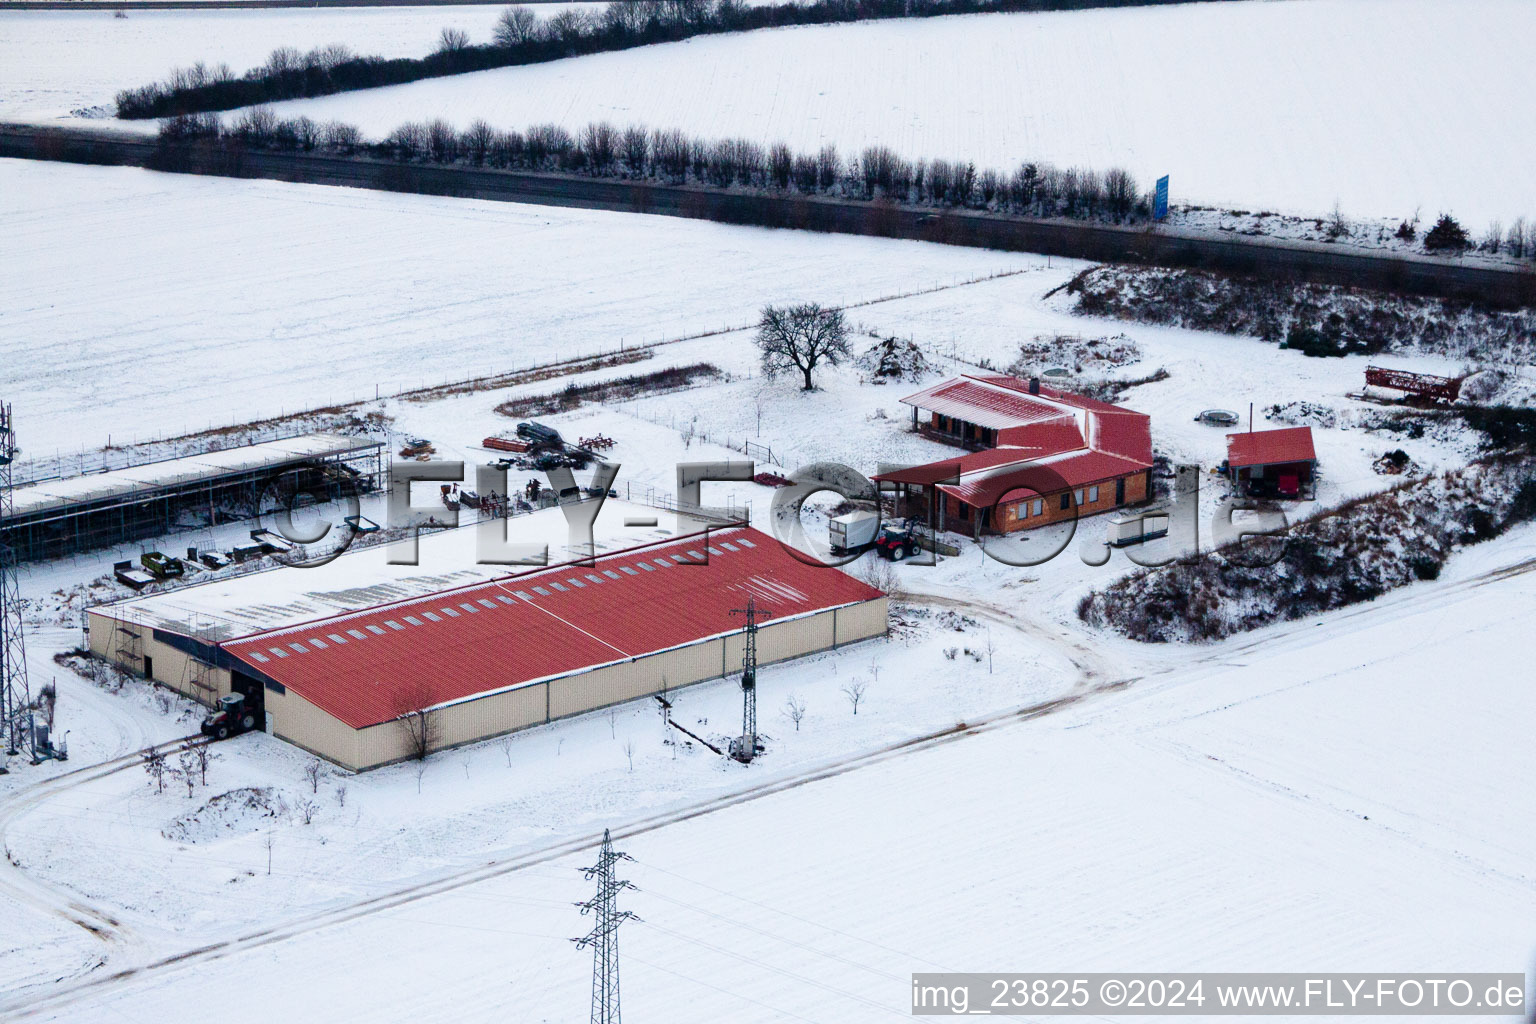 Luftbild von Hühnerhof Eierfarm im Winter bei Schnee in Erlenbach bei Kandel im Bundesland Rheinland-Pfalz, Deutschland